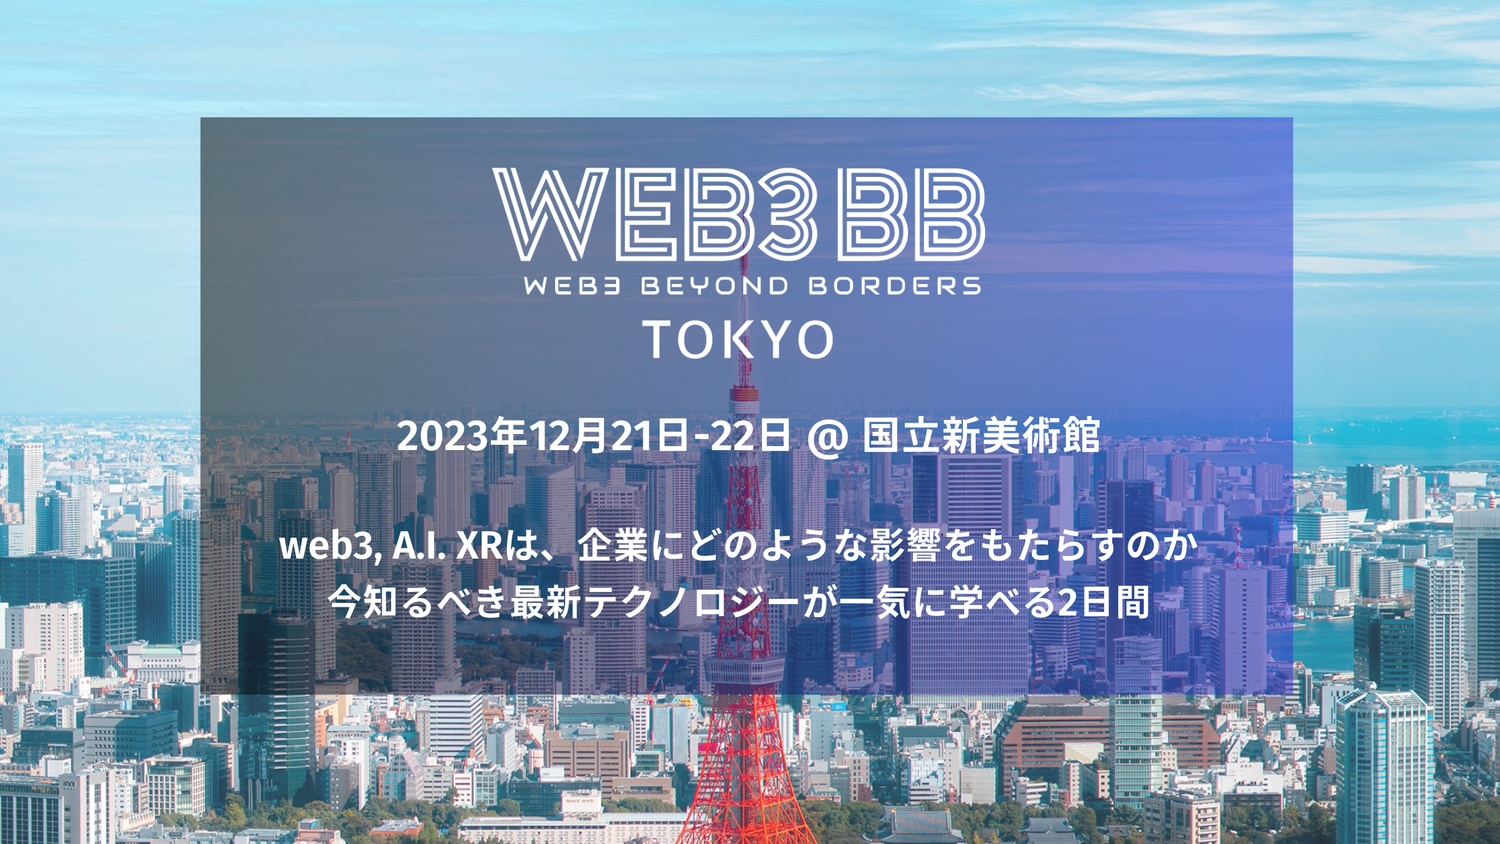 Japan Open Chain、日本発グローバルweb3ビジネスコミュニティ「web3BB Tokyo」に出展・登壇